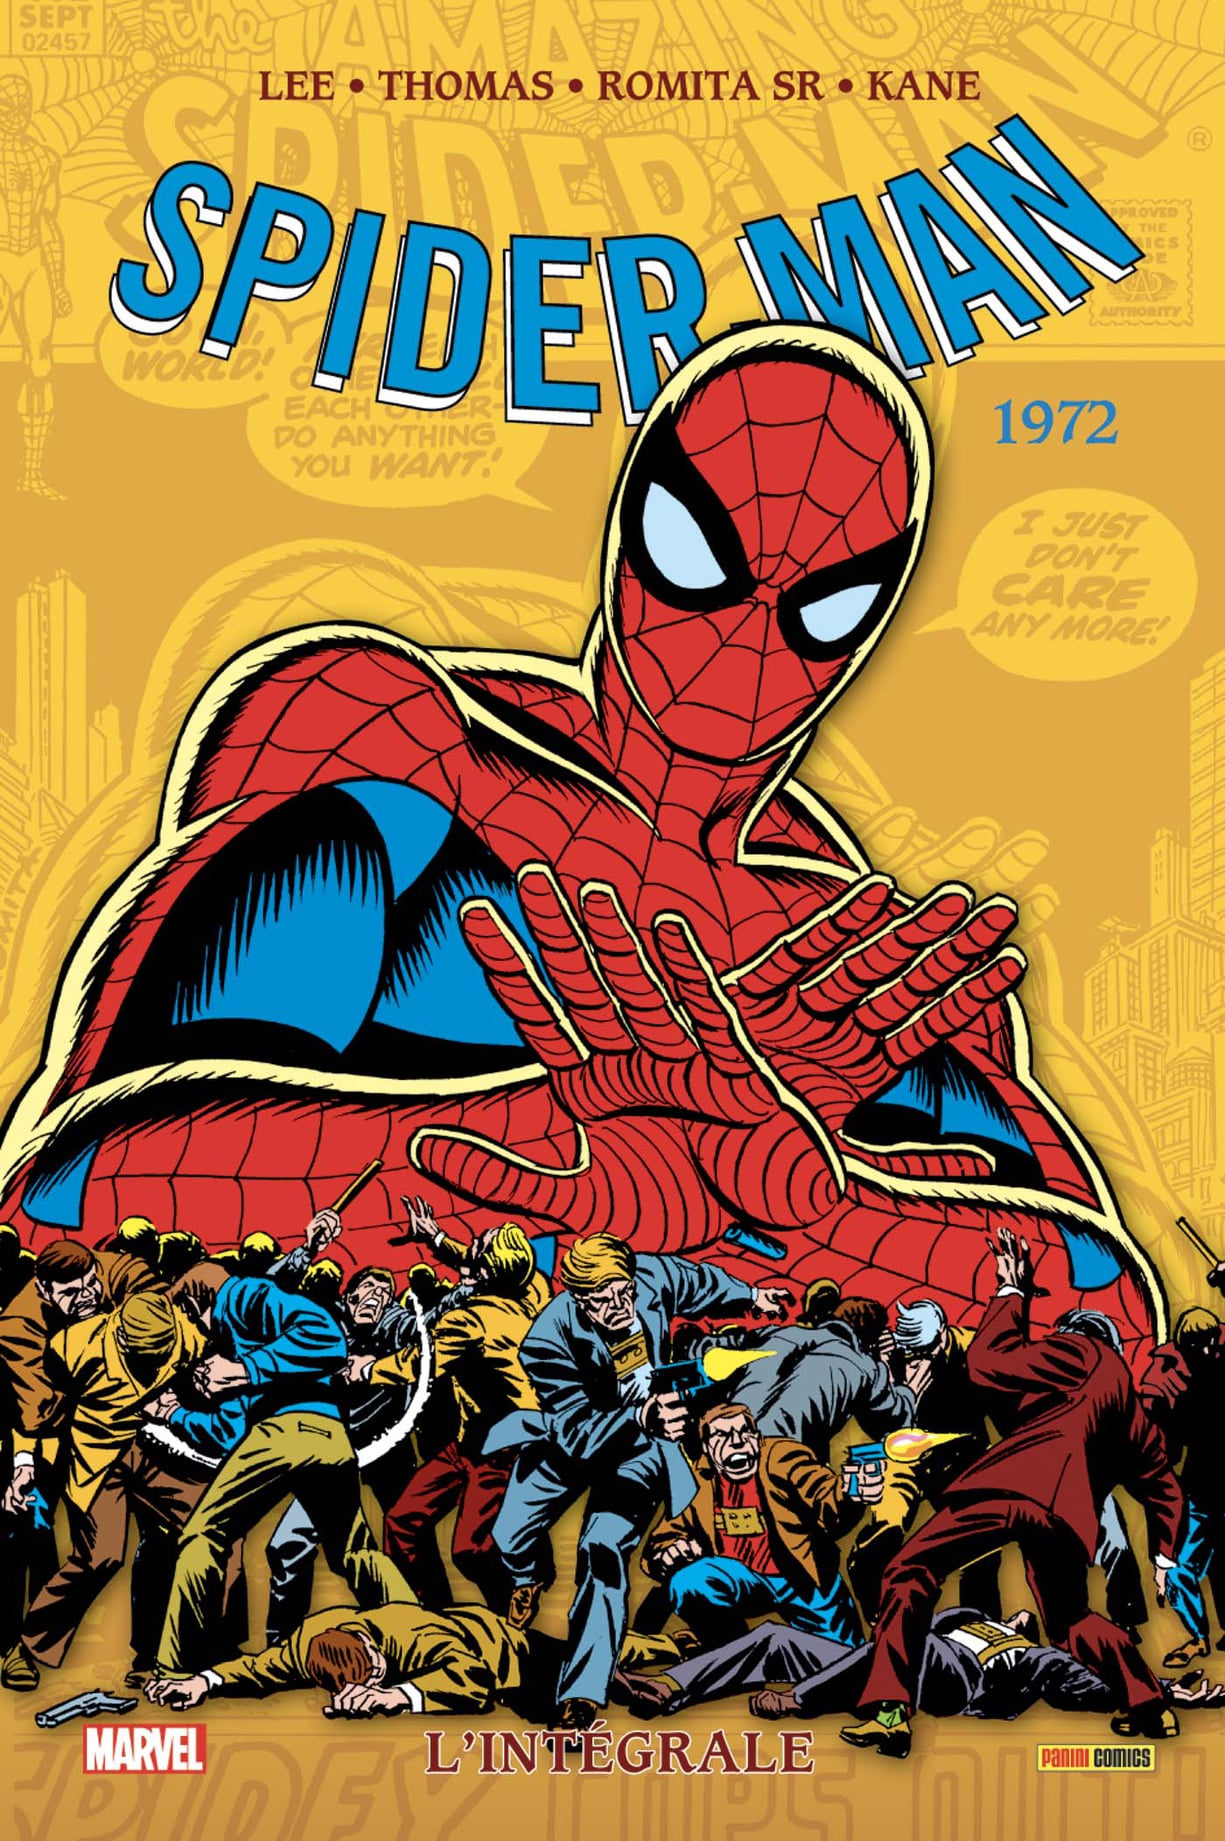 img comics 16302 spider man l integrale 1972 nouvelle edition Les sorties Panini du mois de Mars 2021